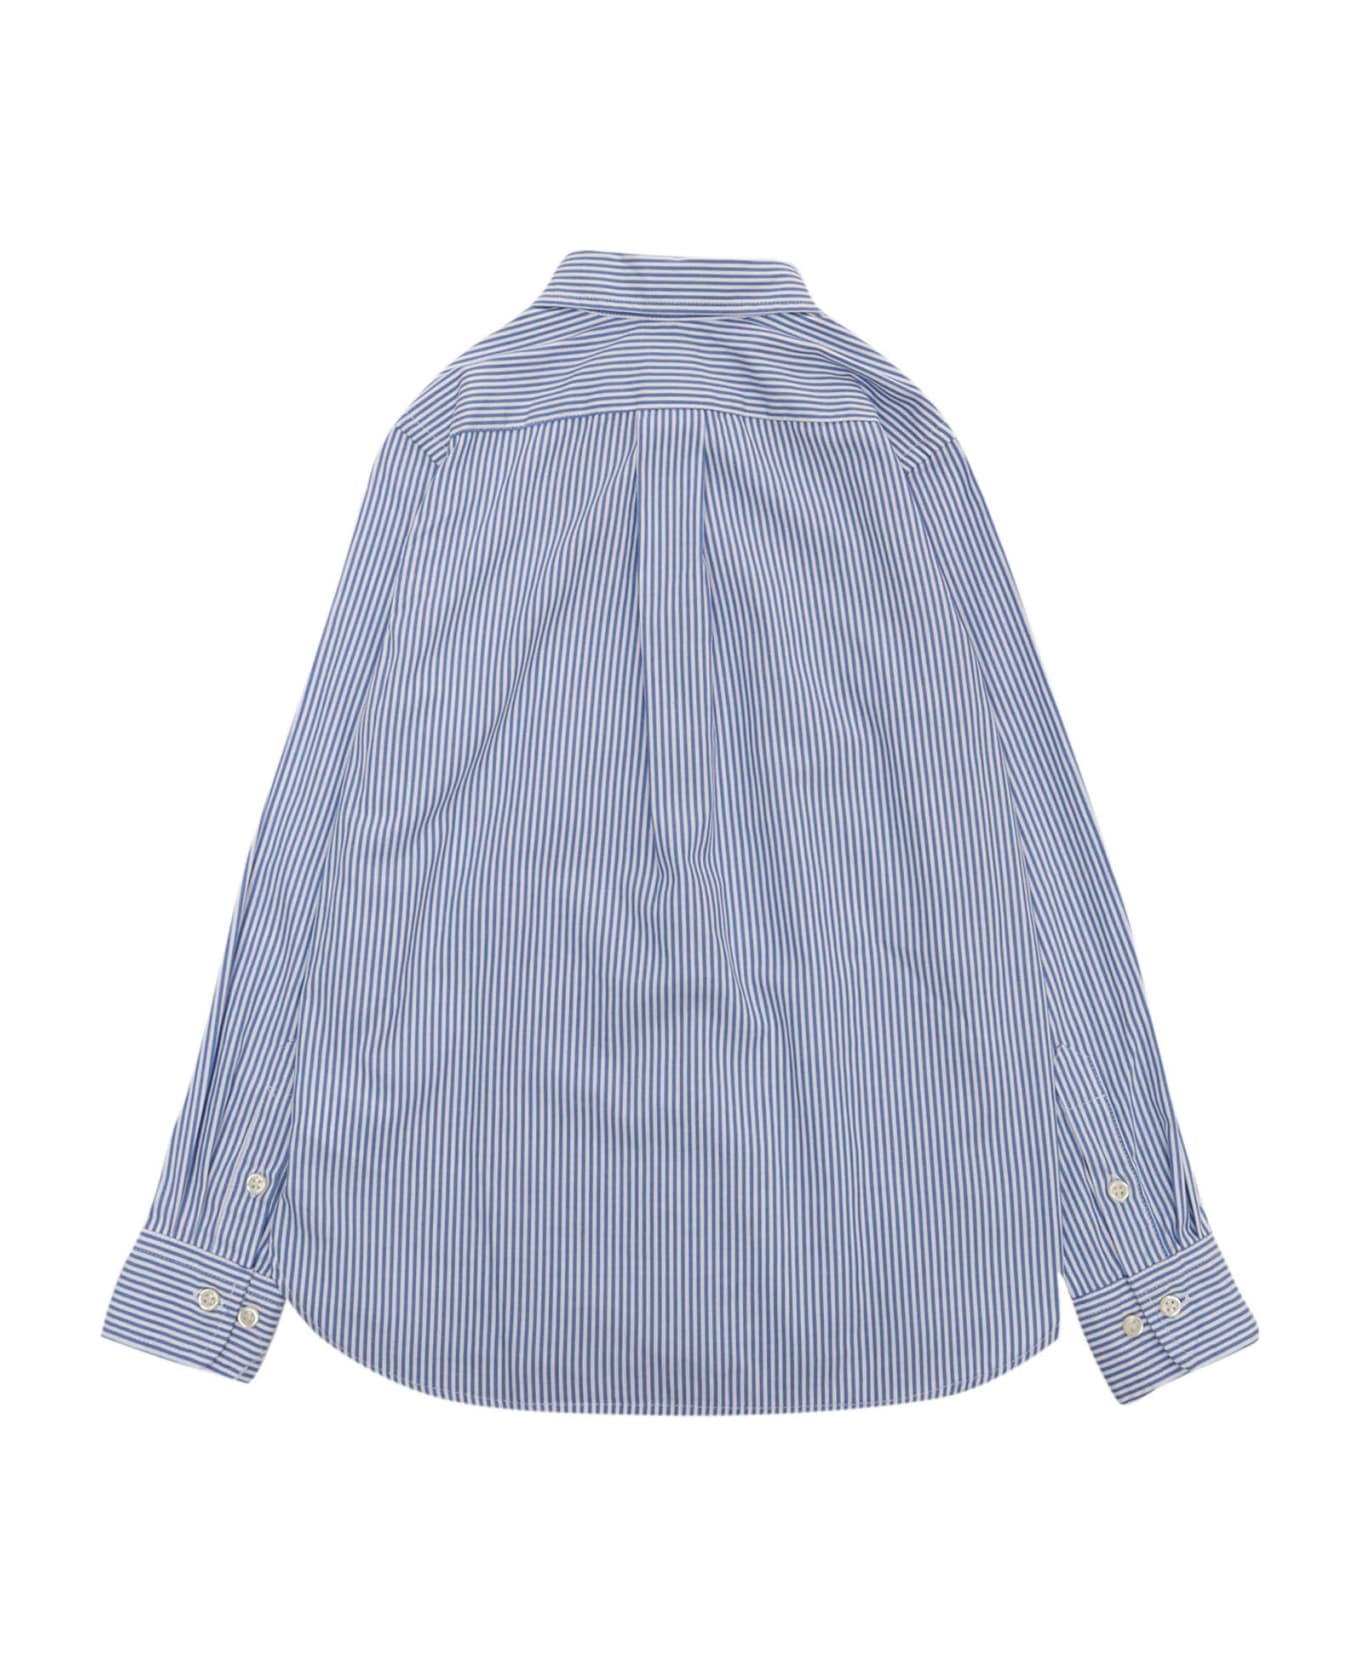 Polo Ralph Lauren Striped Shirt - BLUE シャツ